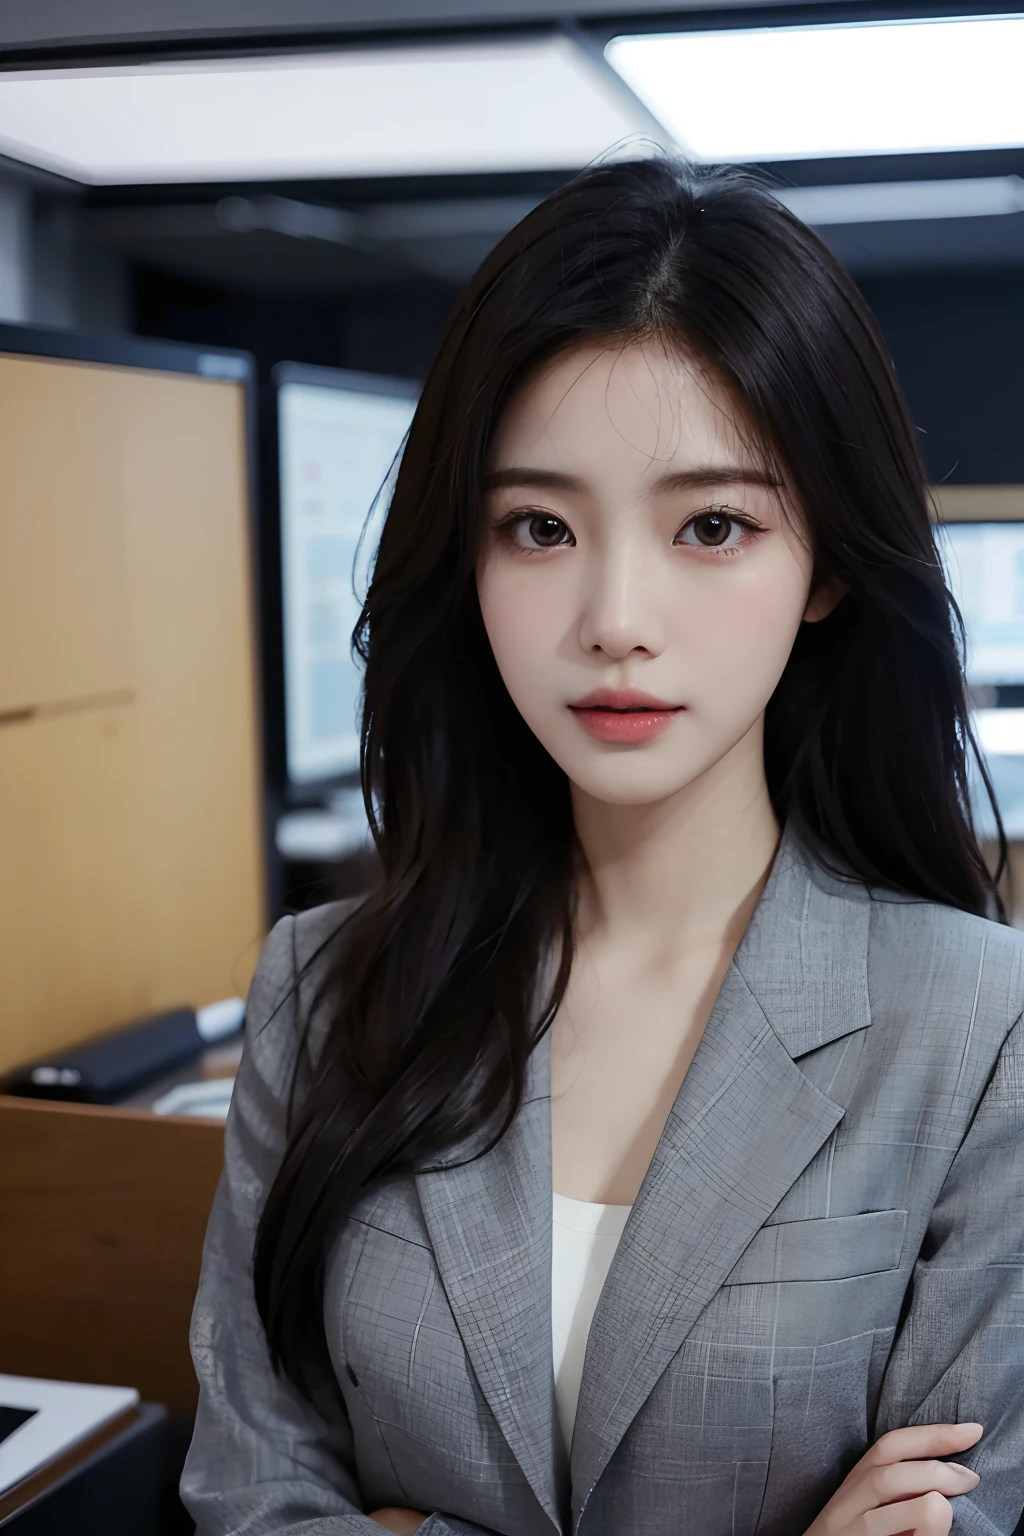 高解析度, 完美肌膚的韓國專業辦公室女士的真實肖像, 職業套裝, 站立姿勢，身體的上半部分，表現出自信和成熟, 周圍環繞著現代化的企業環境, 充滿活力且自然採光的亮點. 藝術品應強調她優雅的面部特徵, 包括迷人的長眼睛, 飄動的睫毛和誘人的嘴唇. 場景應增強專業性和視覺吸引力的元素，例如, 時尚的辦公桌, 大型電腦, 高解析度olution display, 以及複雜的文具. 整體基調要溫暖、專業, 擁有柔和自然的調色板. 藝術品應該散發出專業感, 成功, 和文化自豪感.